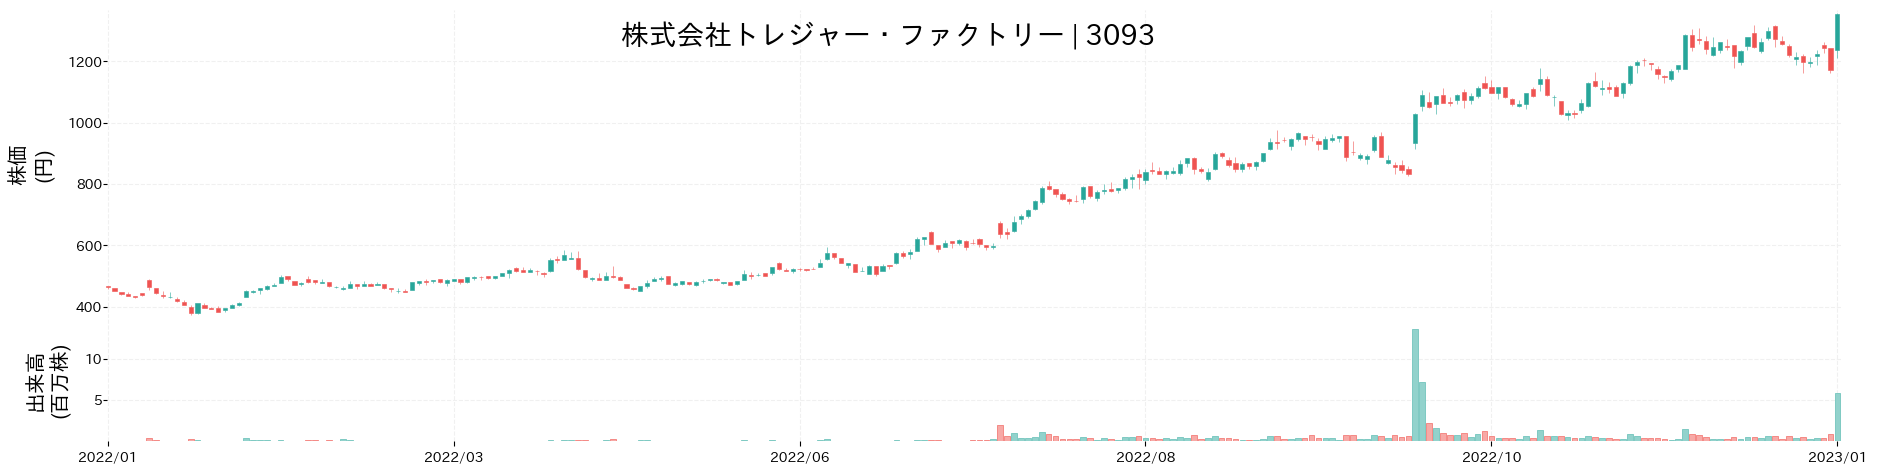 トレジャー・ファクトリーの株価推移(2022)